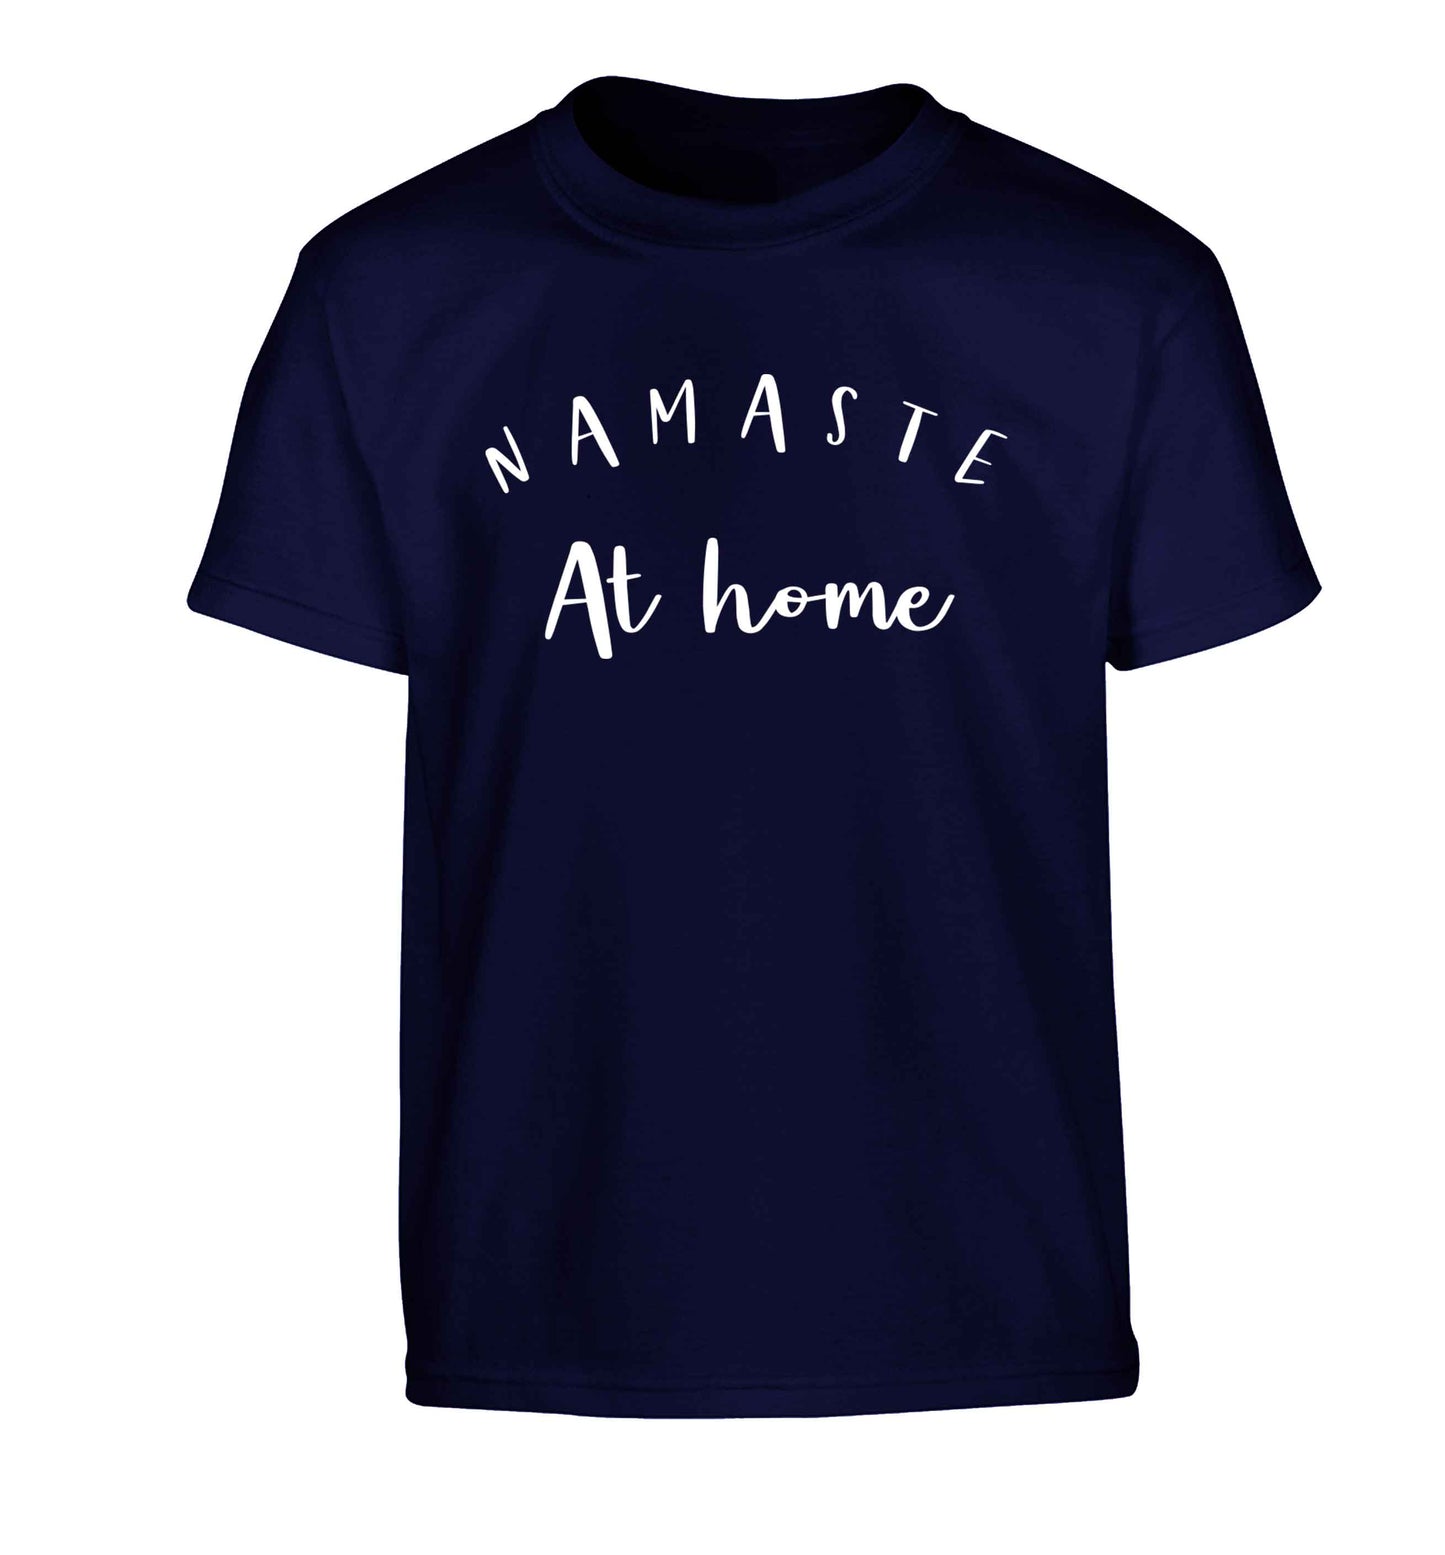 Namaste at home Children's navy Tshirt 12-13 Years